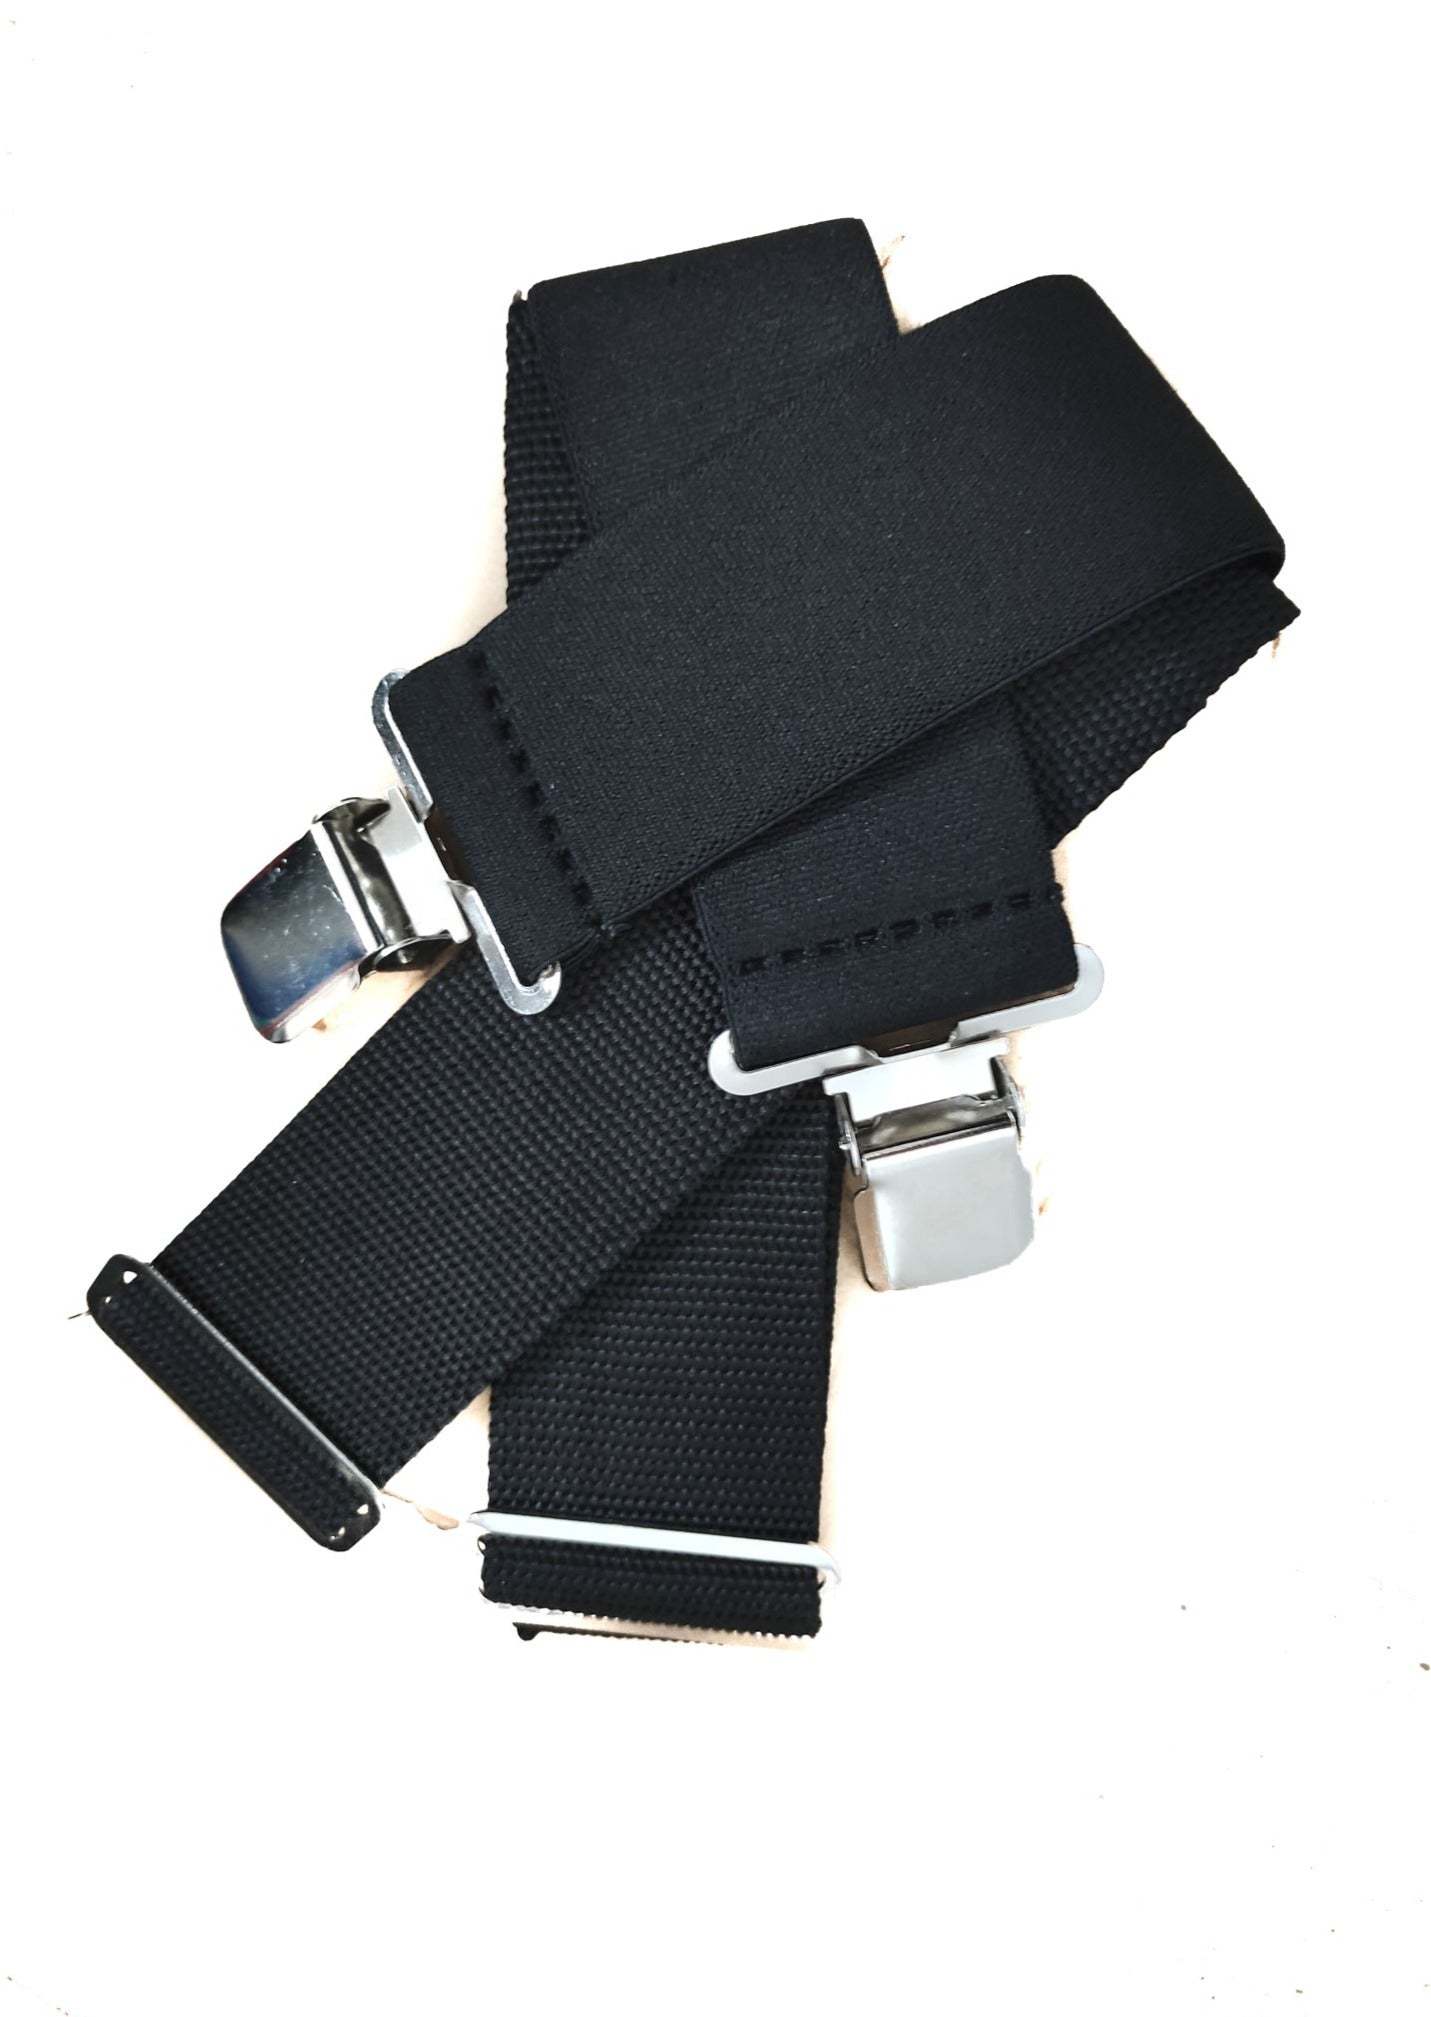 Stock Ανδρικό ζευγάρι Τιράντες  AWP σε Μαύρο Χρώμα και Ασημί τοκάκια (One Size)